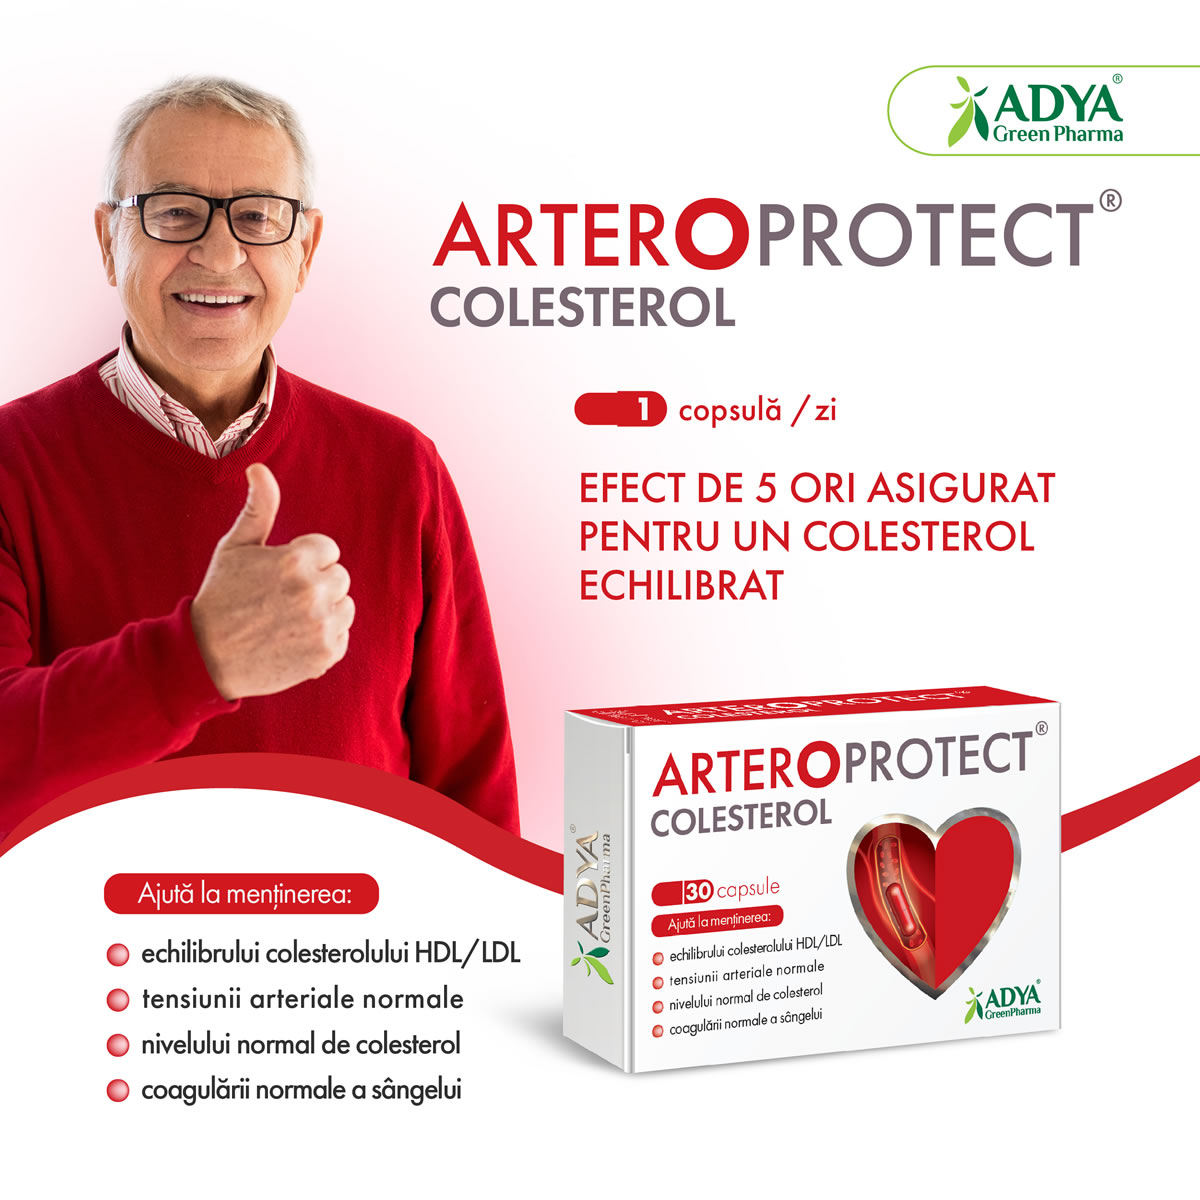 Arteroprotect Colesterol Adya GreenPharma